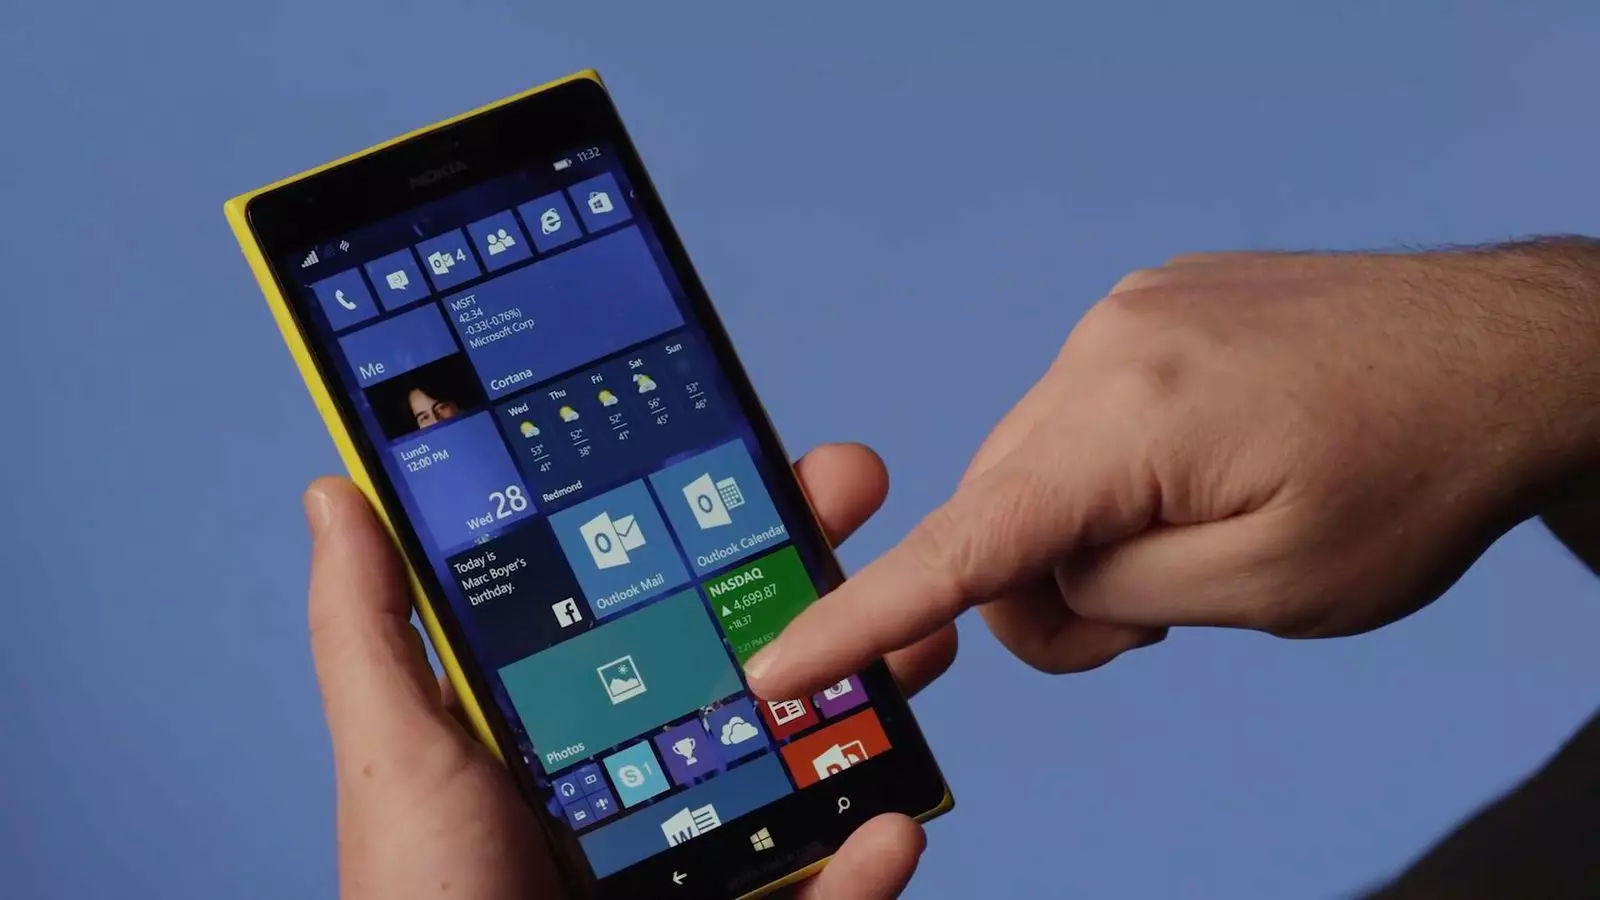 Плитковий дизайн Windows Phone багатьом дуже не сподобався, а сама ОС не могла надати ніяких цікавих інновацій